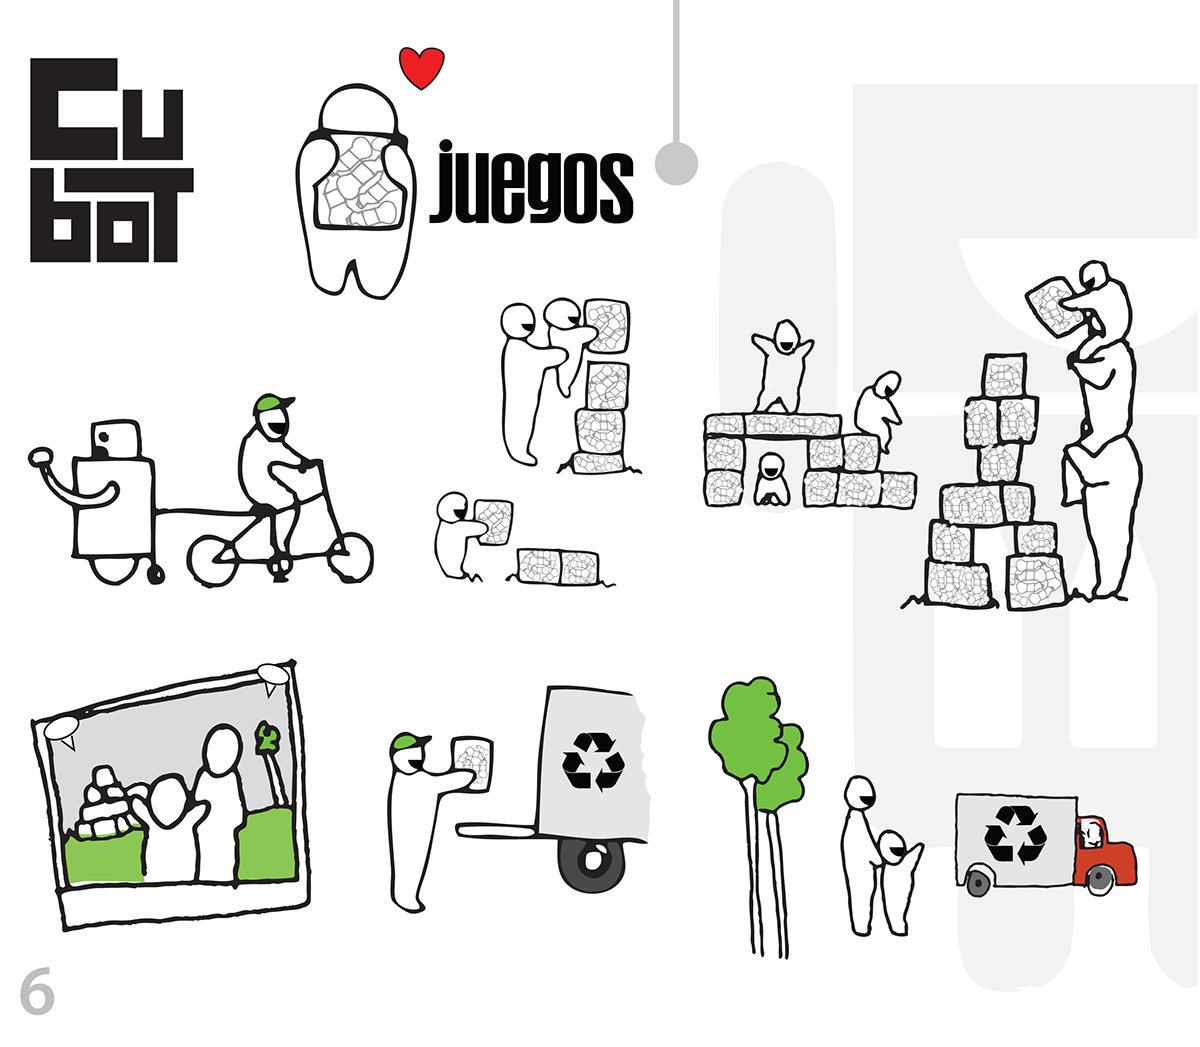 Cubot Mexico design net